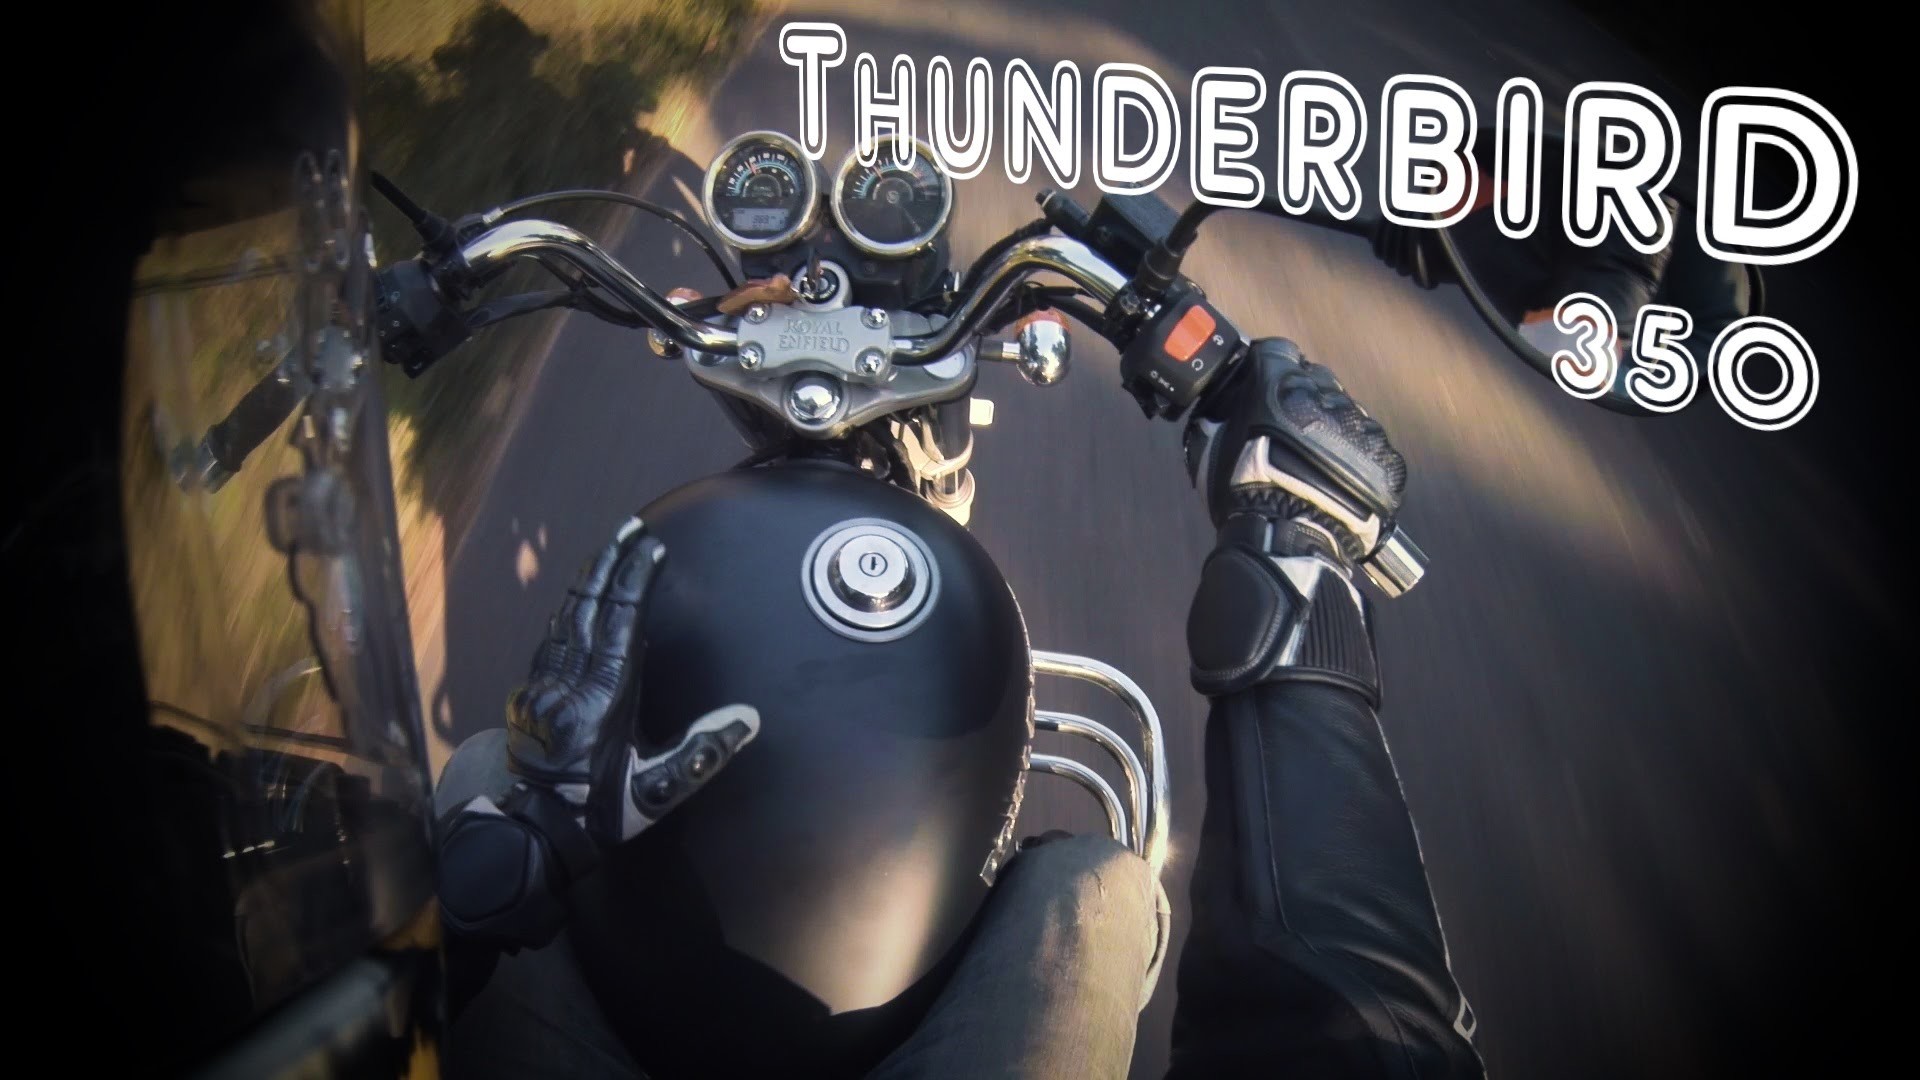 썬더 버드 350의 hd 월페이퍼,오토바이,차량,헬멧,개인 보호 장비,오토바이 헬멧